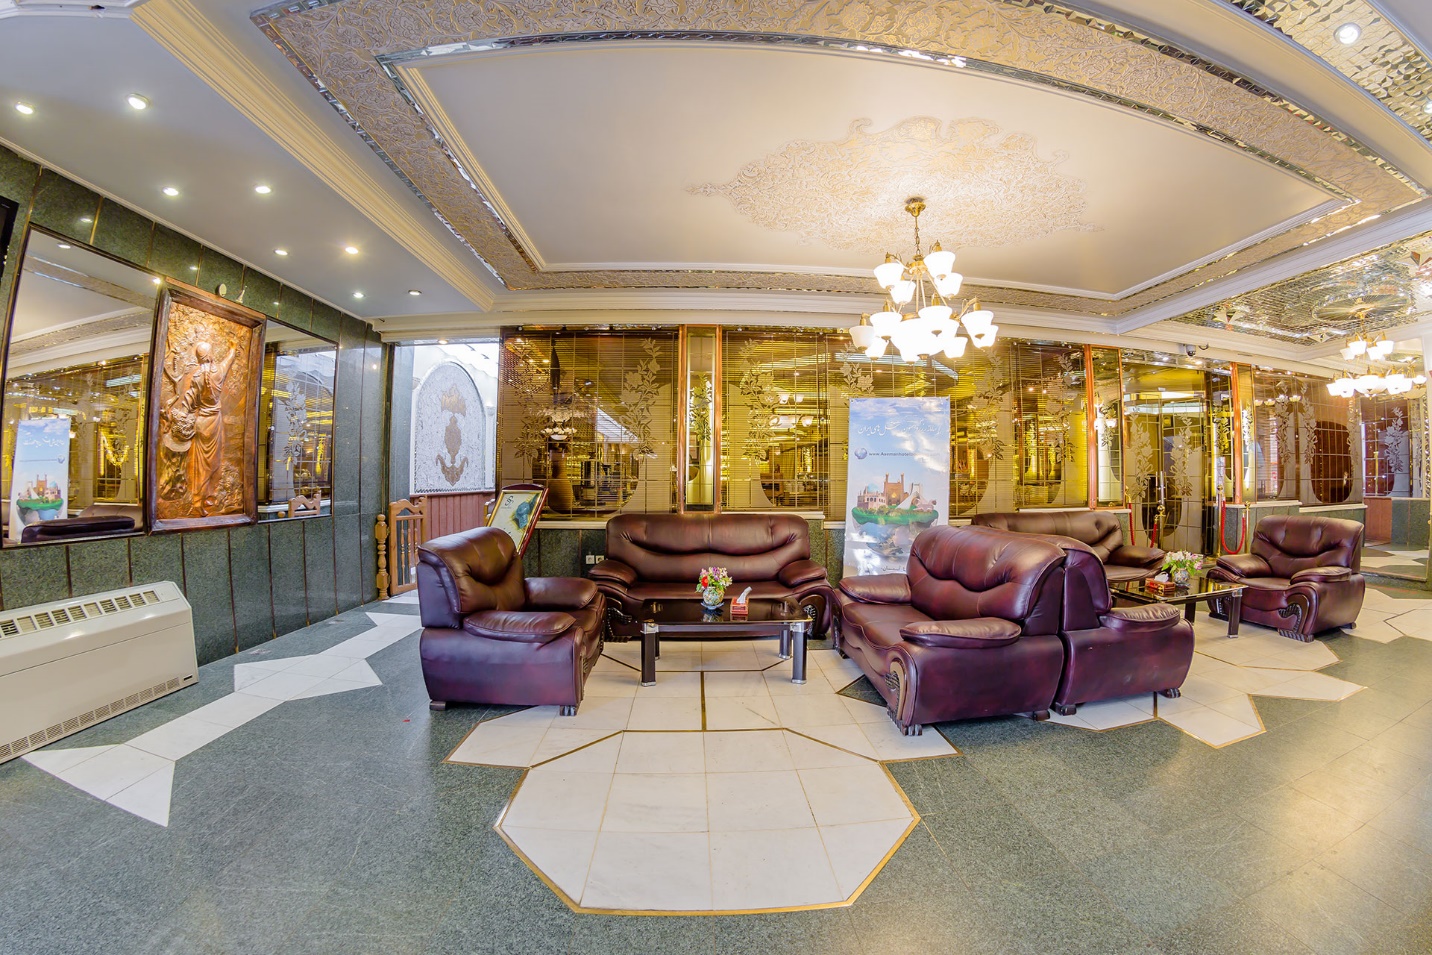 بهترین هتل های اصفهان از دید مسافران کدامند؟